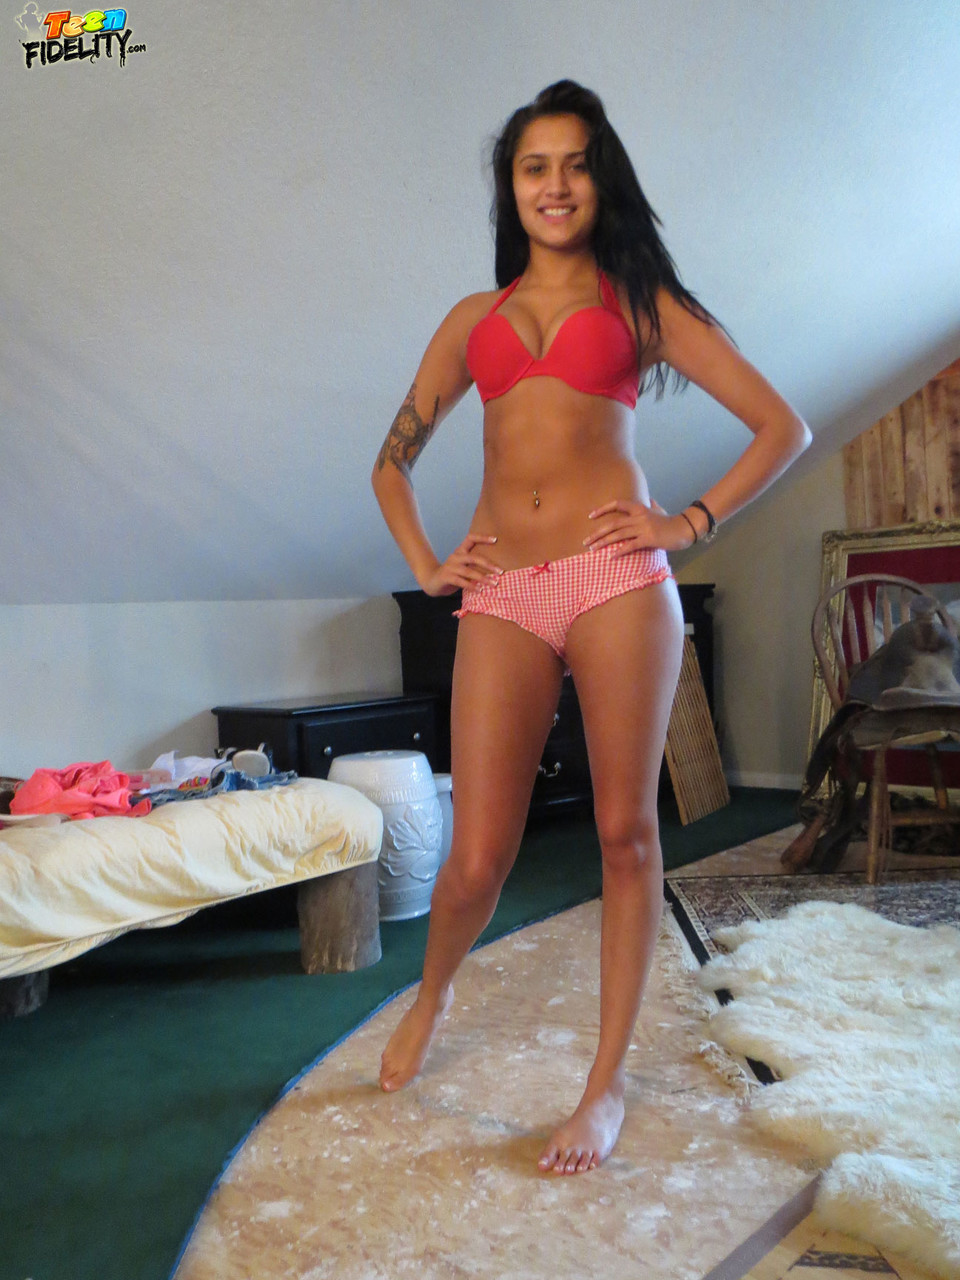 Teen babe with small tits Giselle Mari drops bra & panties to spread topless photo porno #426685751 | Teen Fidelity Pics, Giselle Mari, Ryan Madison, Italian, porno mobile